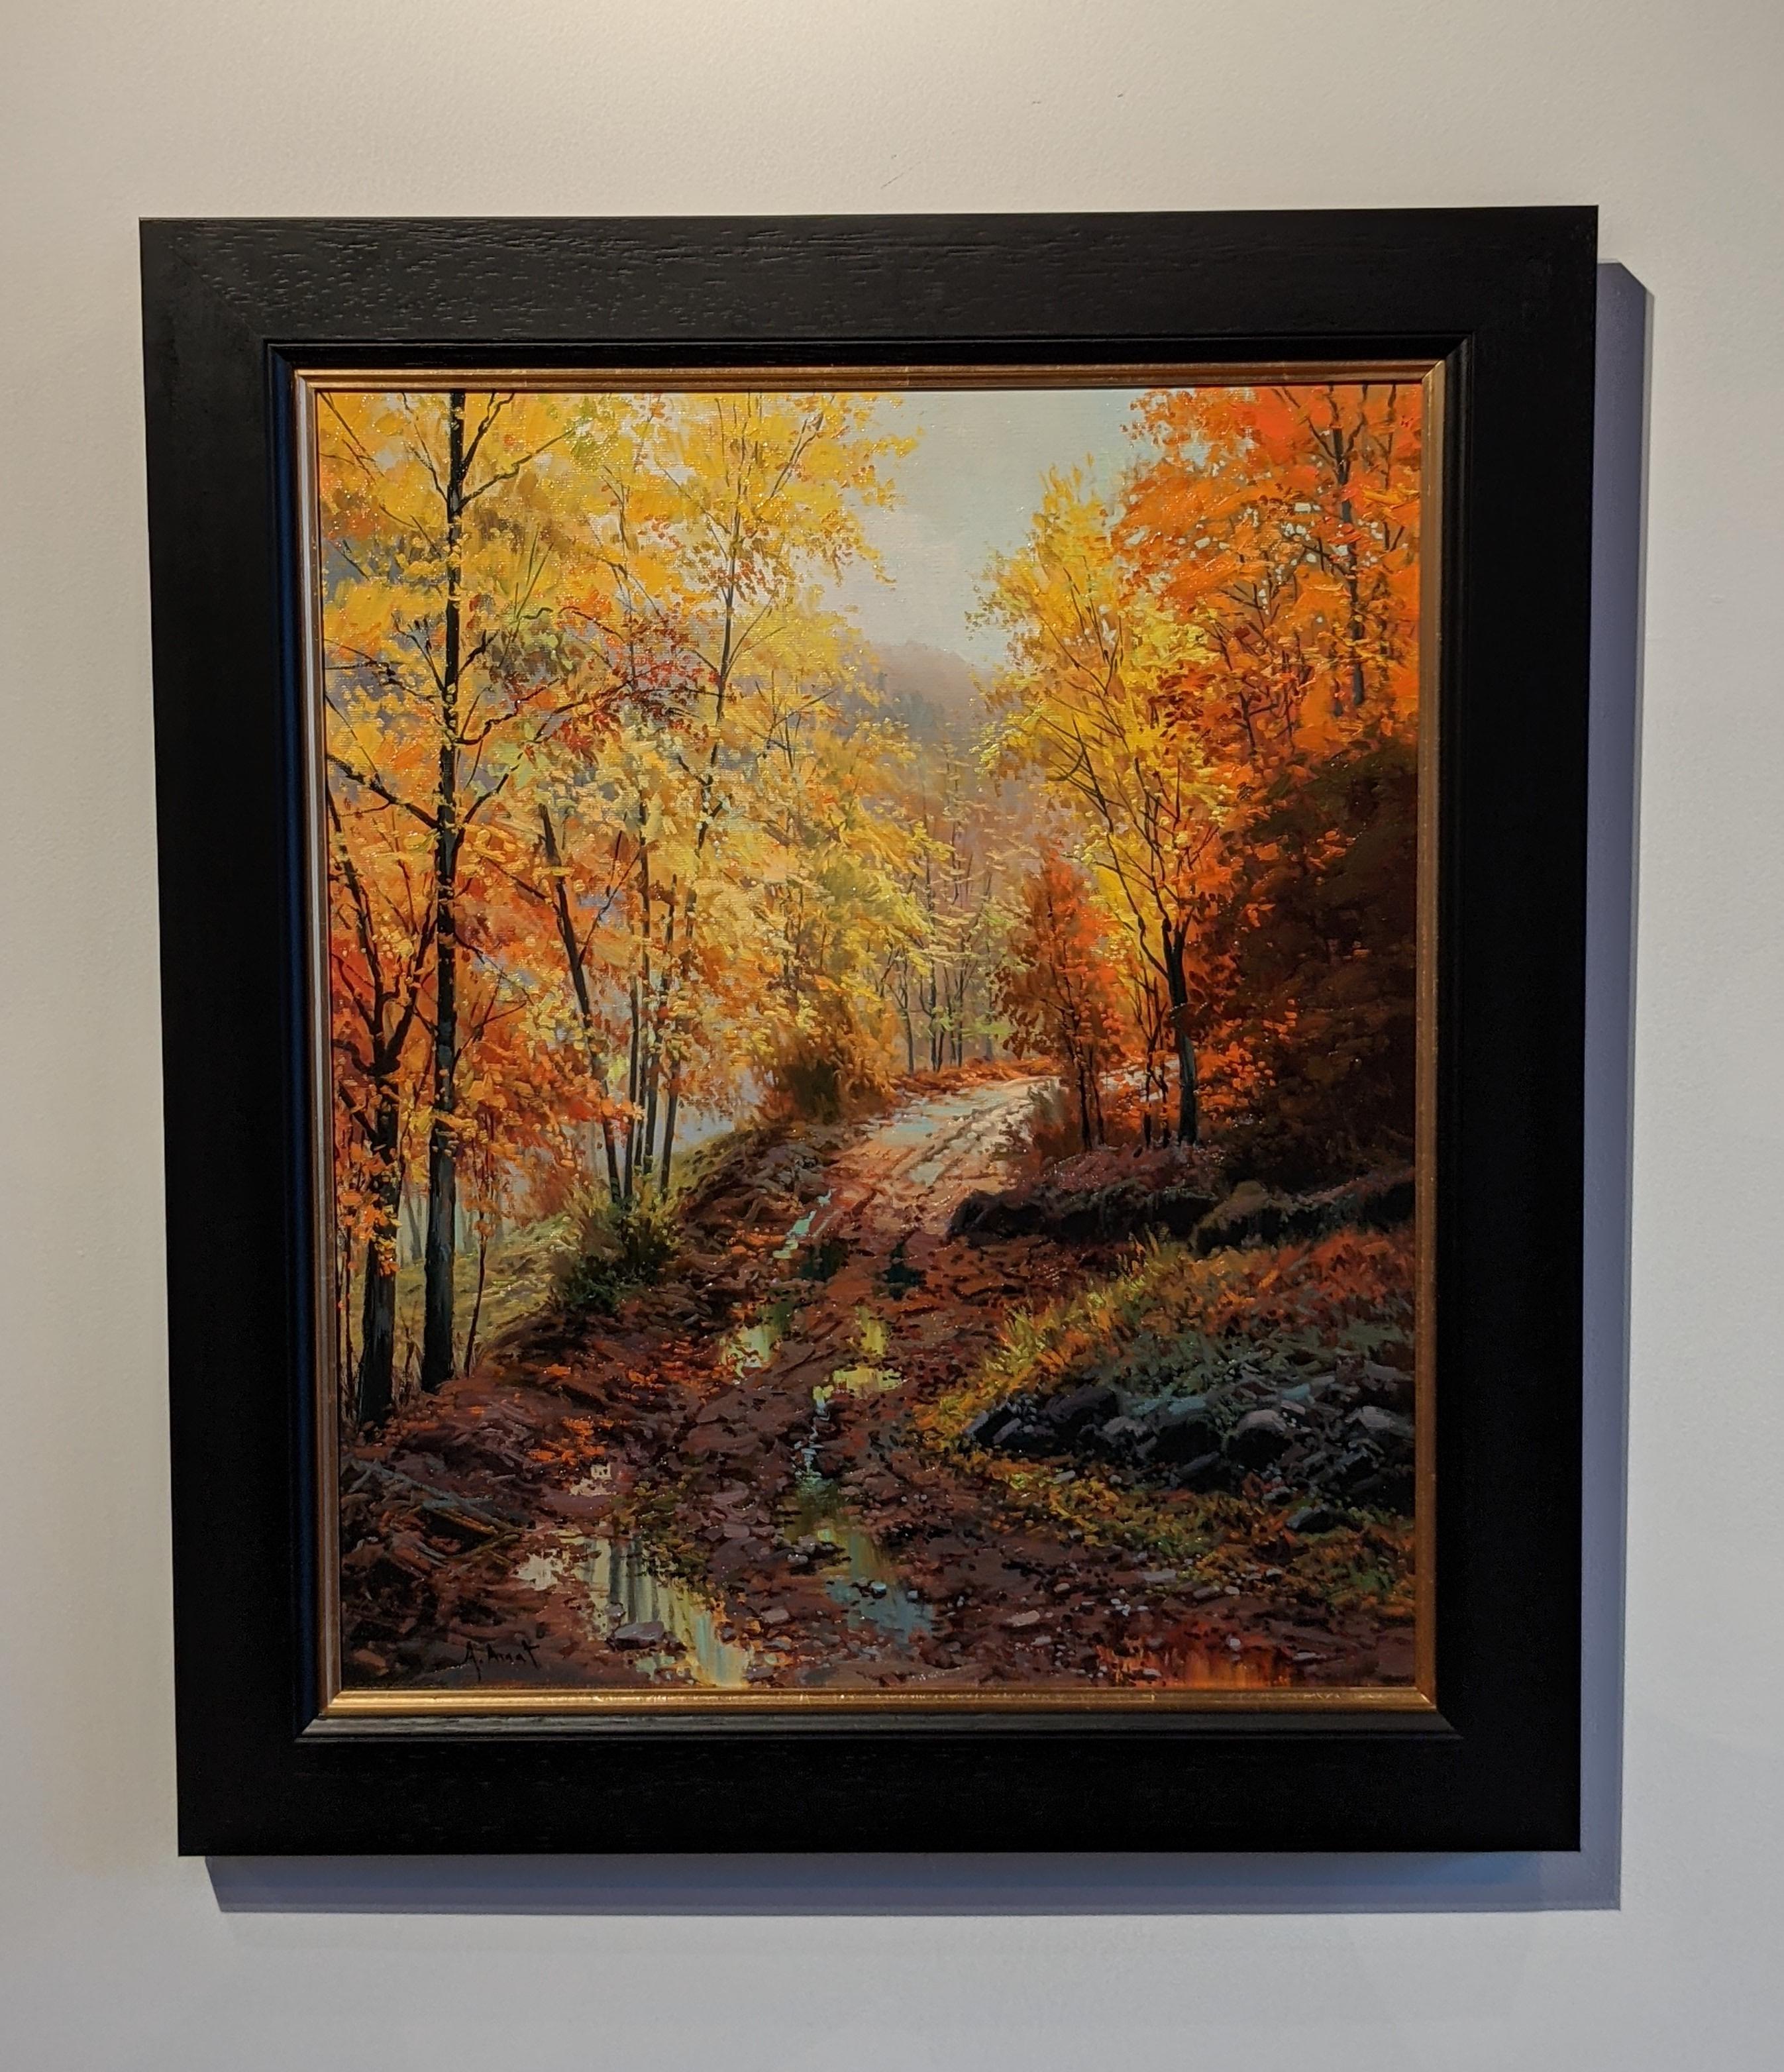 Landscape Painting Amal Amatt - « Autumn in the Woods », peinture de paysage contemporaine d'arbres jaunes et de chemins